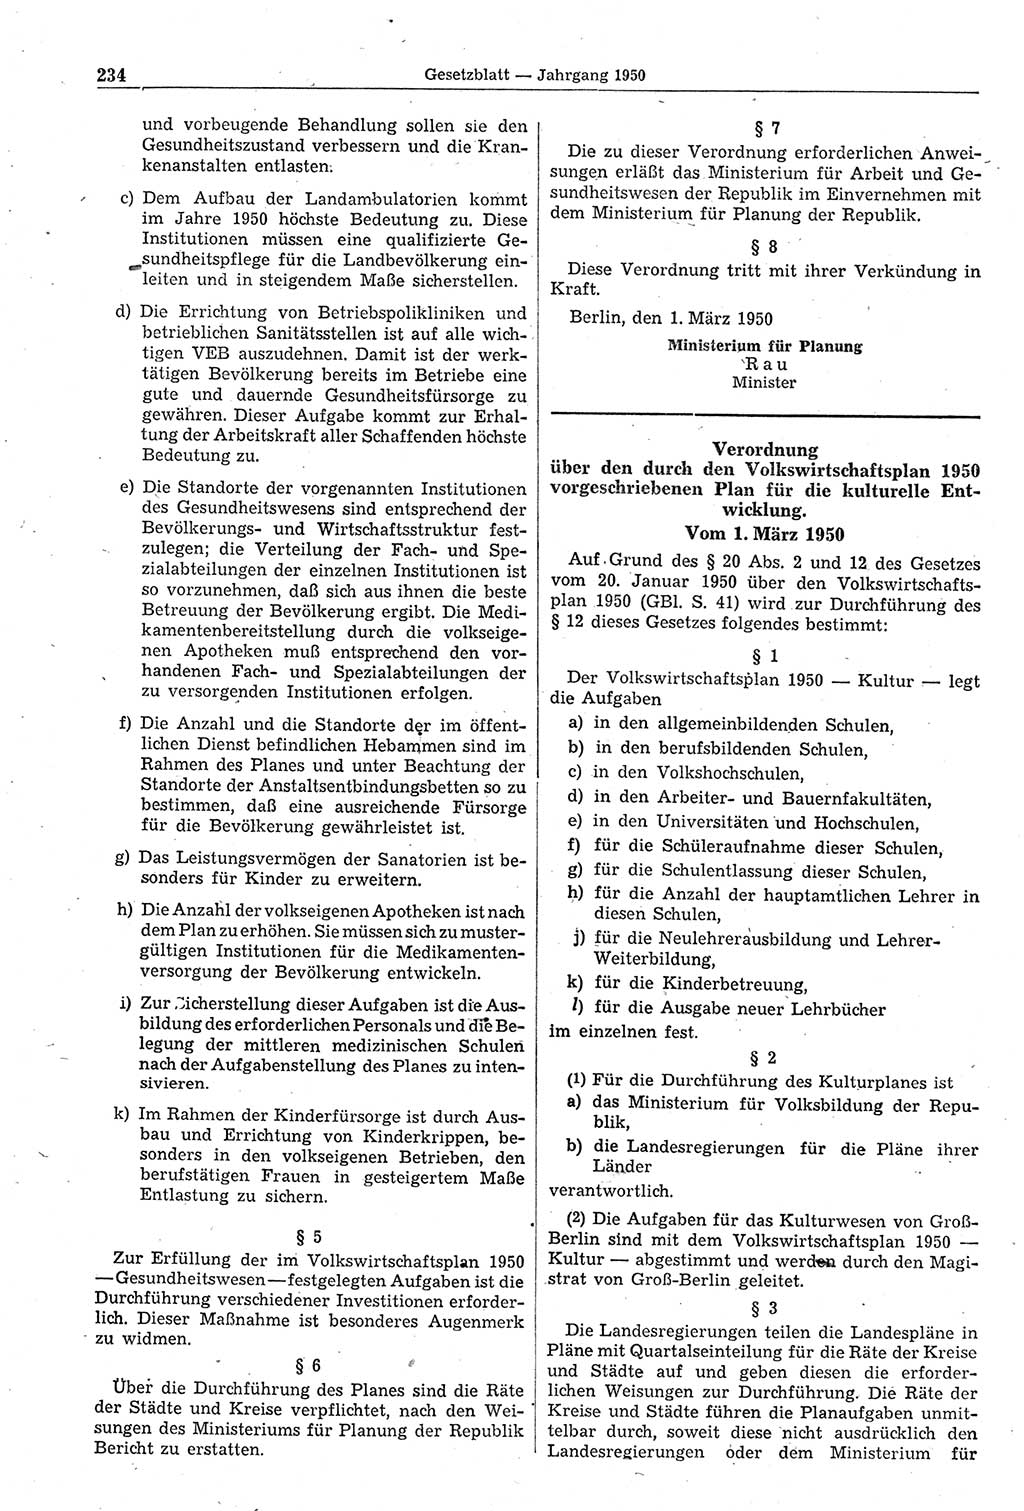 Gesetzblatt (GBl.) der Deutschen Demokratischen Republik (DDR) 1950, Seite 234 (GBl. DDR 1950, S. 234)